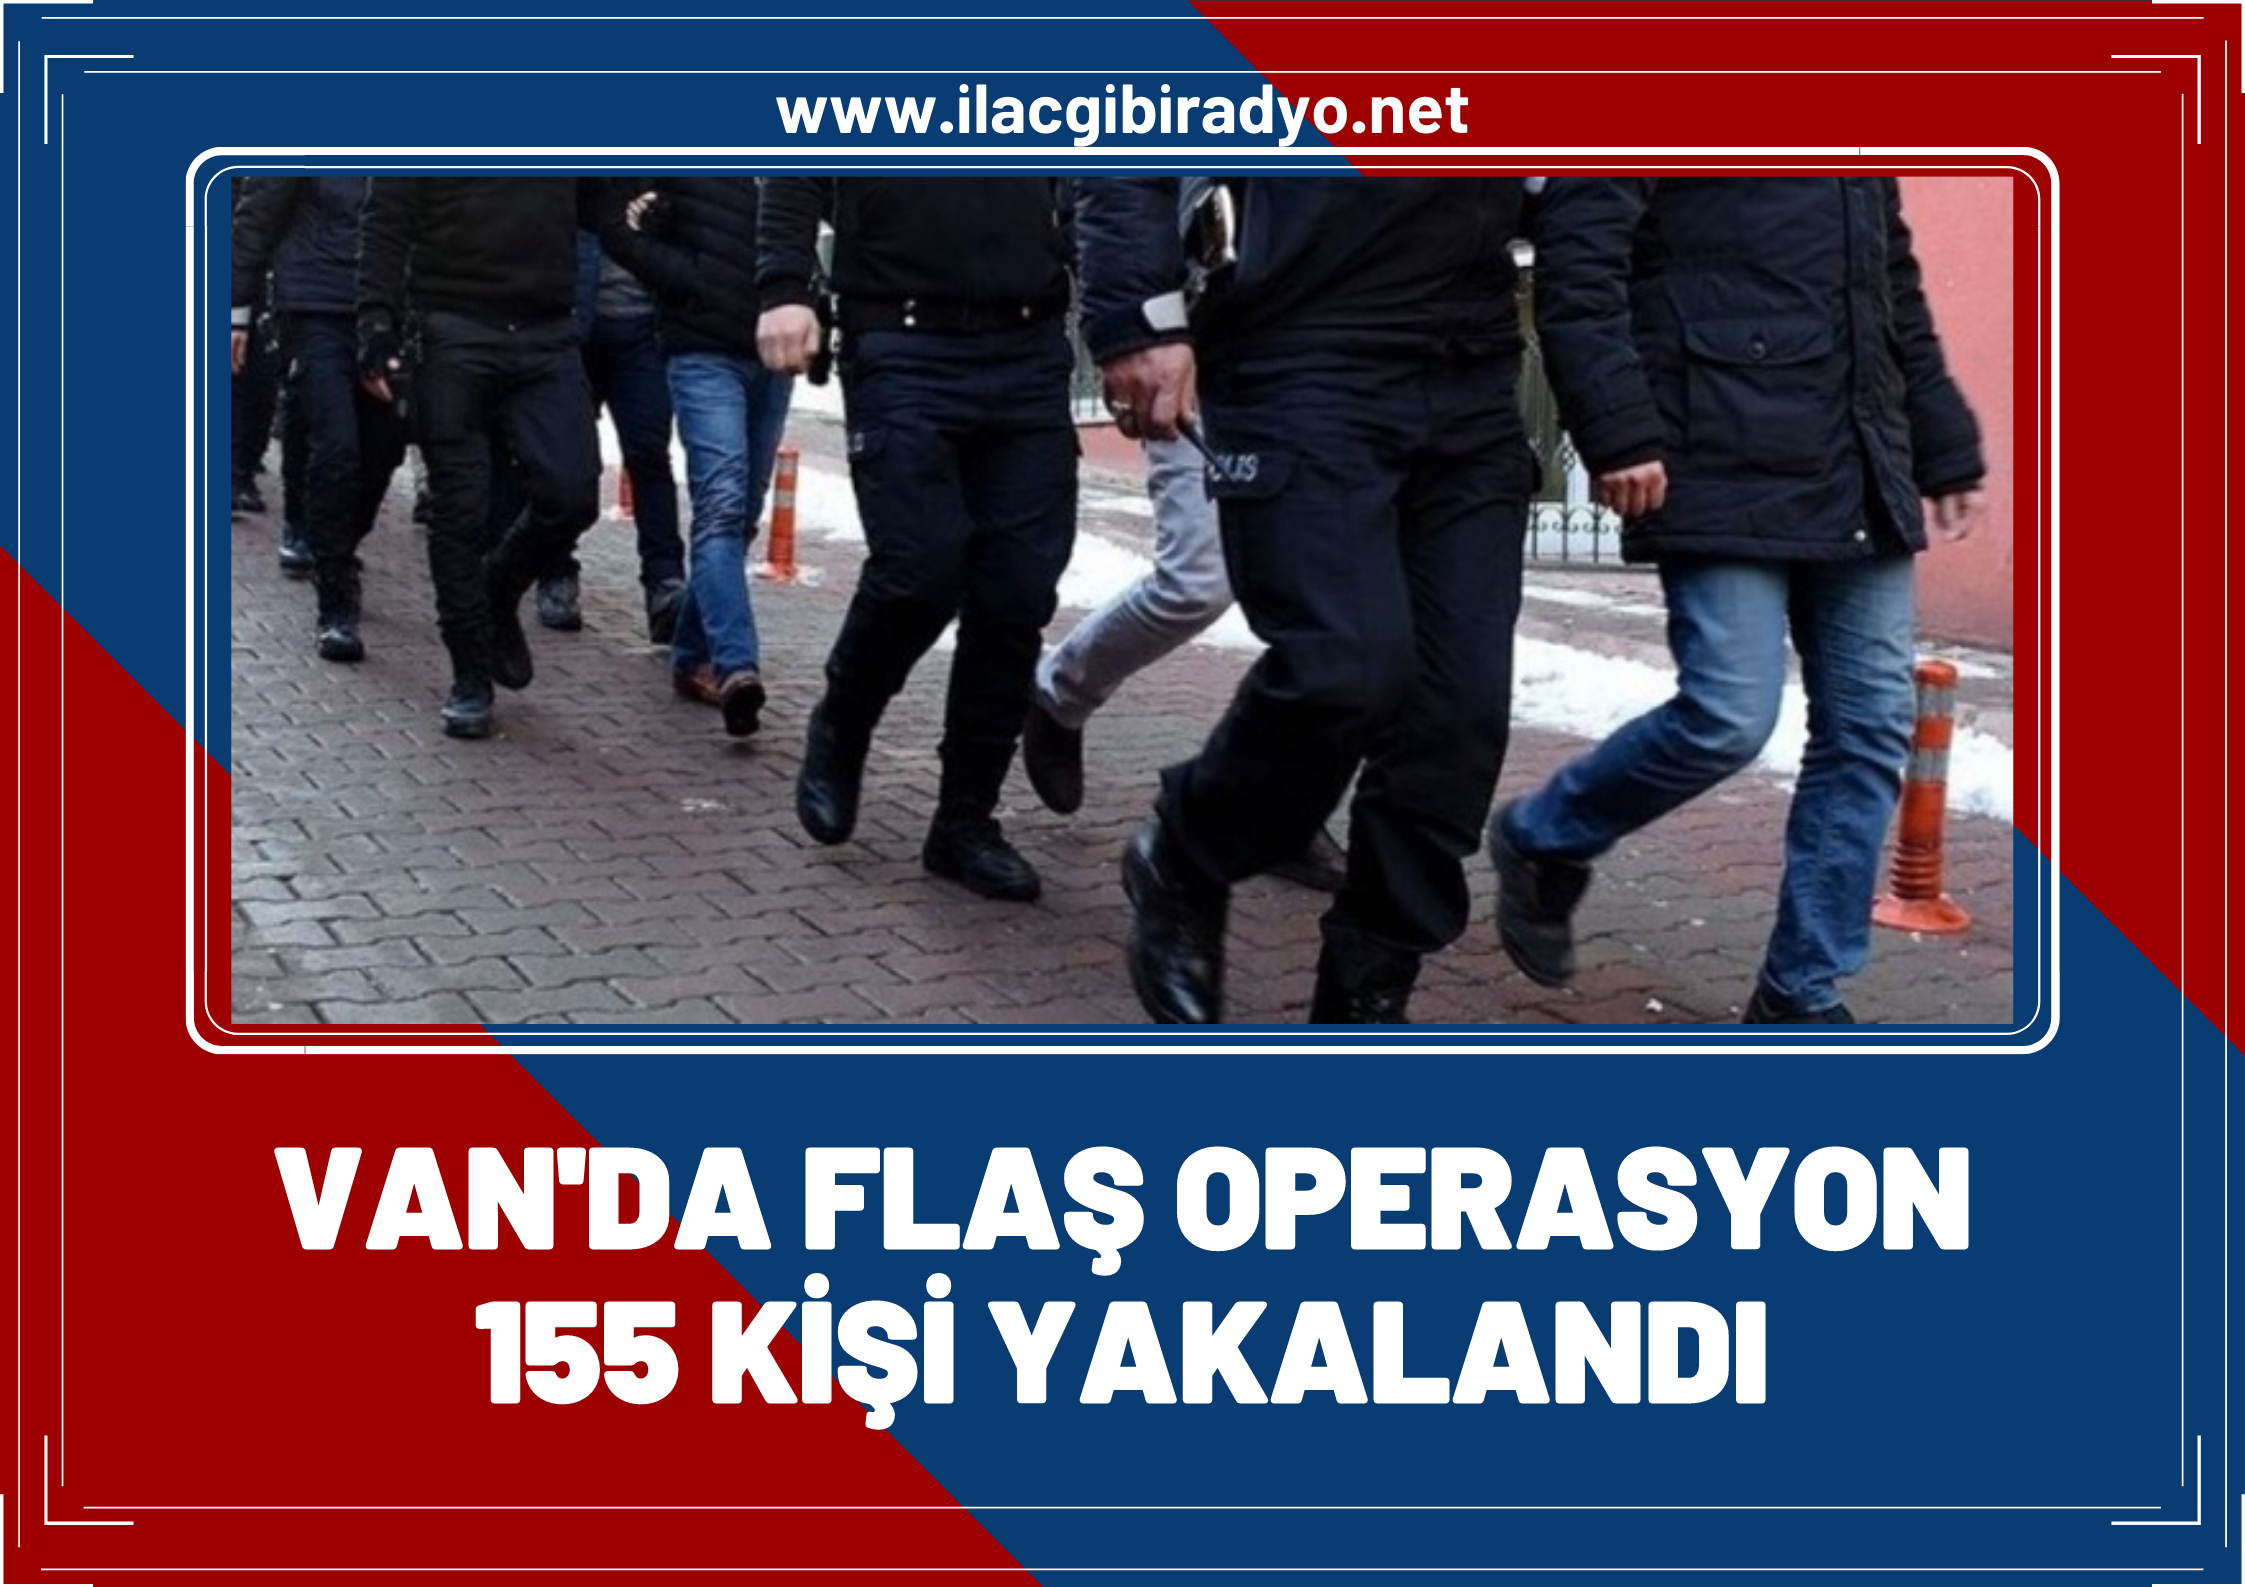 Van'da flaş operasyon: 155 kişi yakalandı!